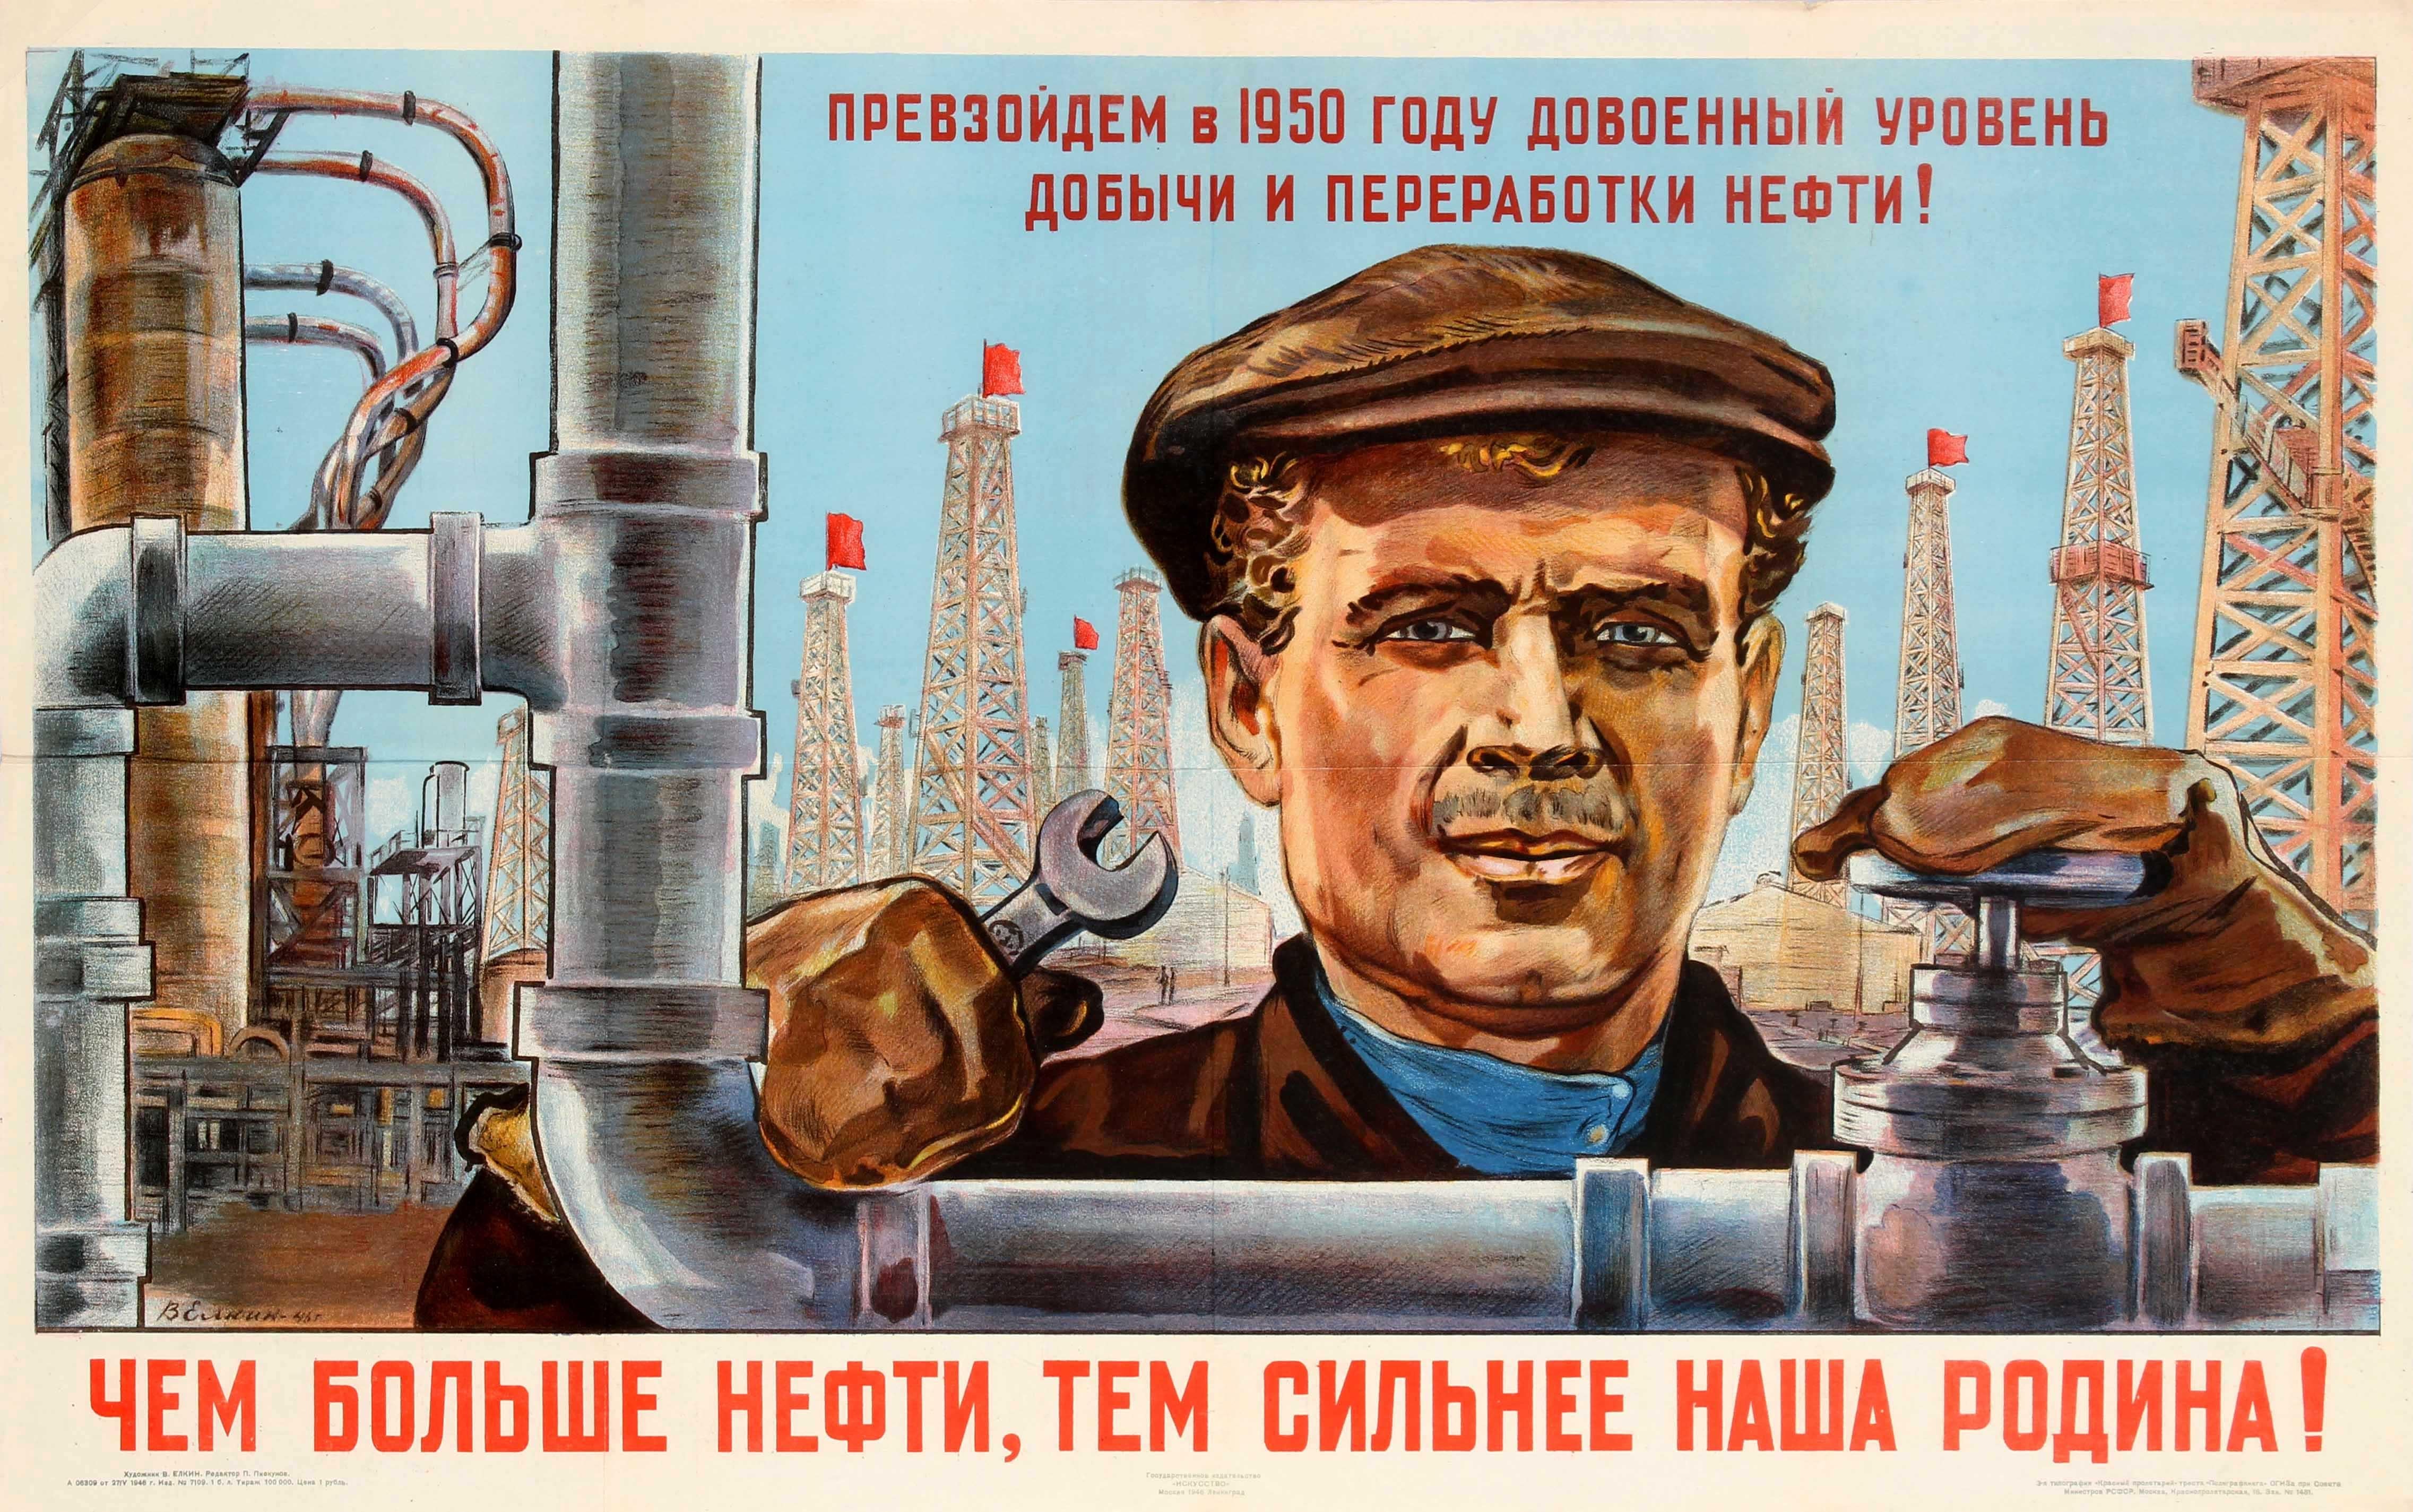 V. Elkin Print - Original Vintage Soviet Russian Poster - More Oil For A Stronger Motherland USSR